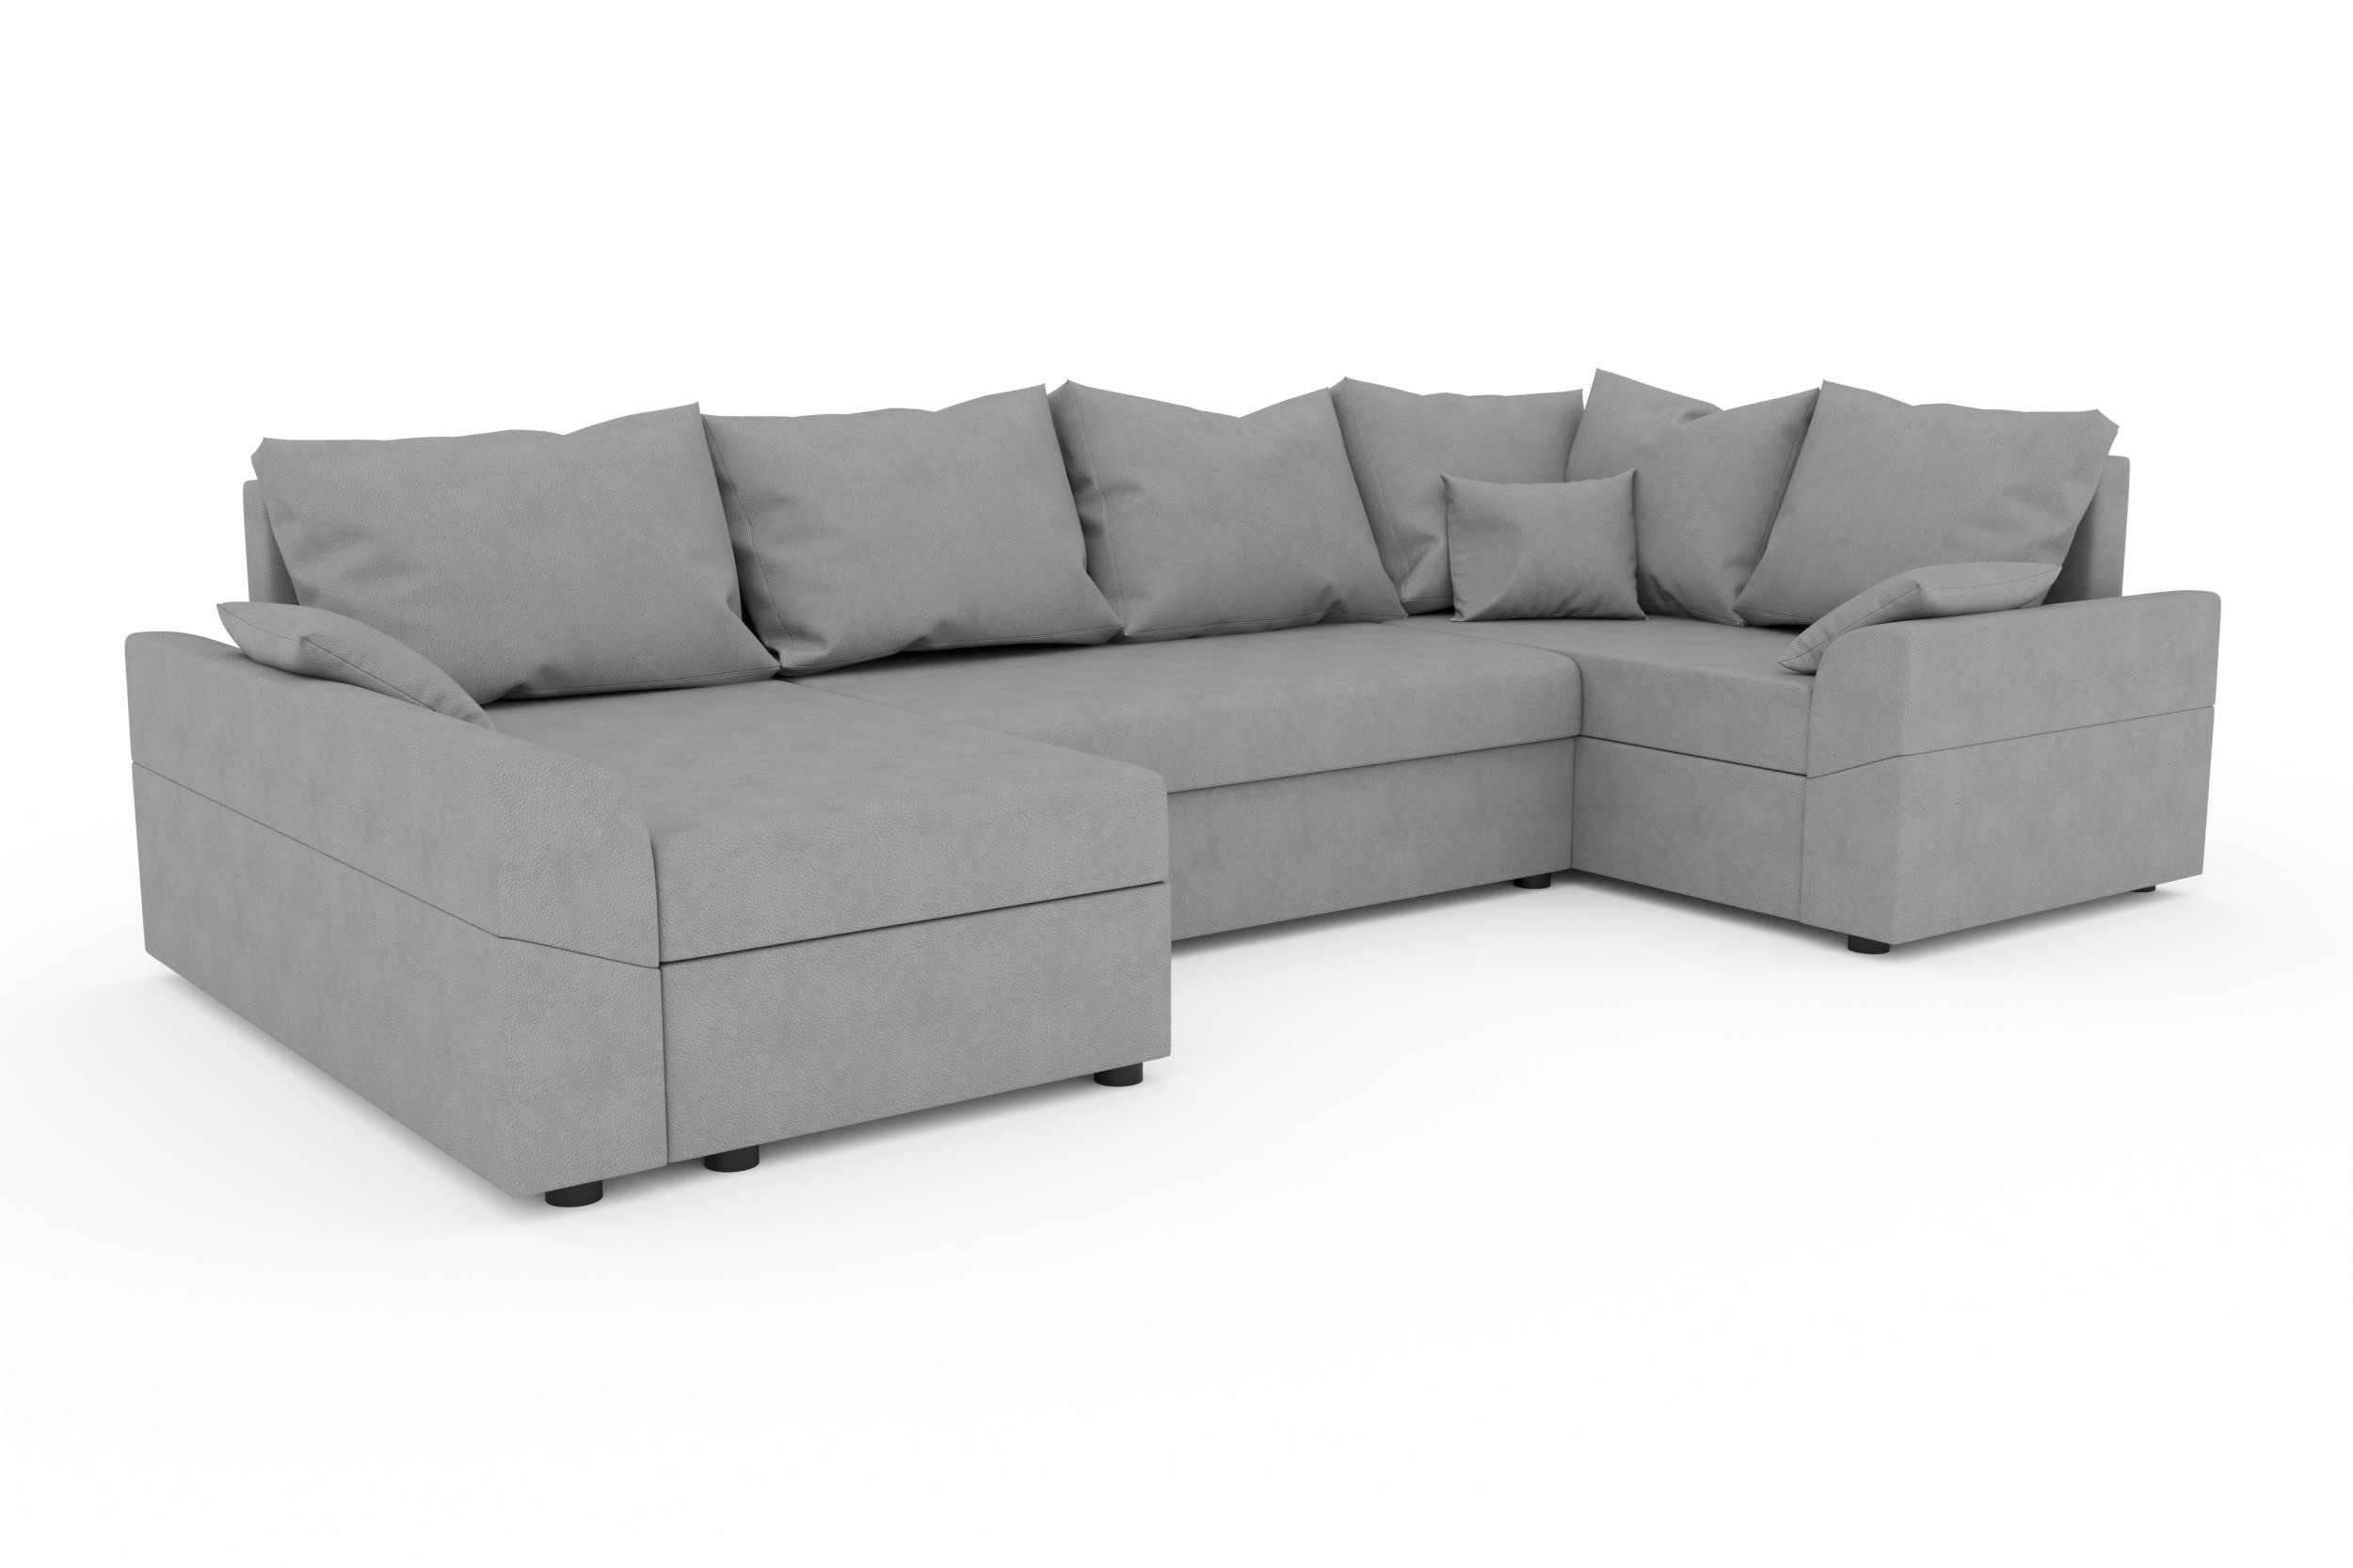 Eckcouch, U-Form, Sofa, Bettkasten, Bailey, mit Design mit Stylefy Bettfunktion, Modern Sitzkomfort, Wohnlandschaft